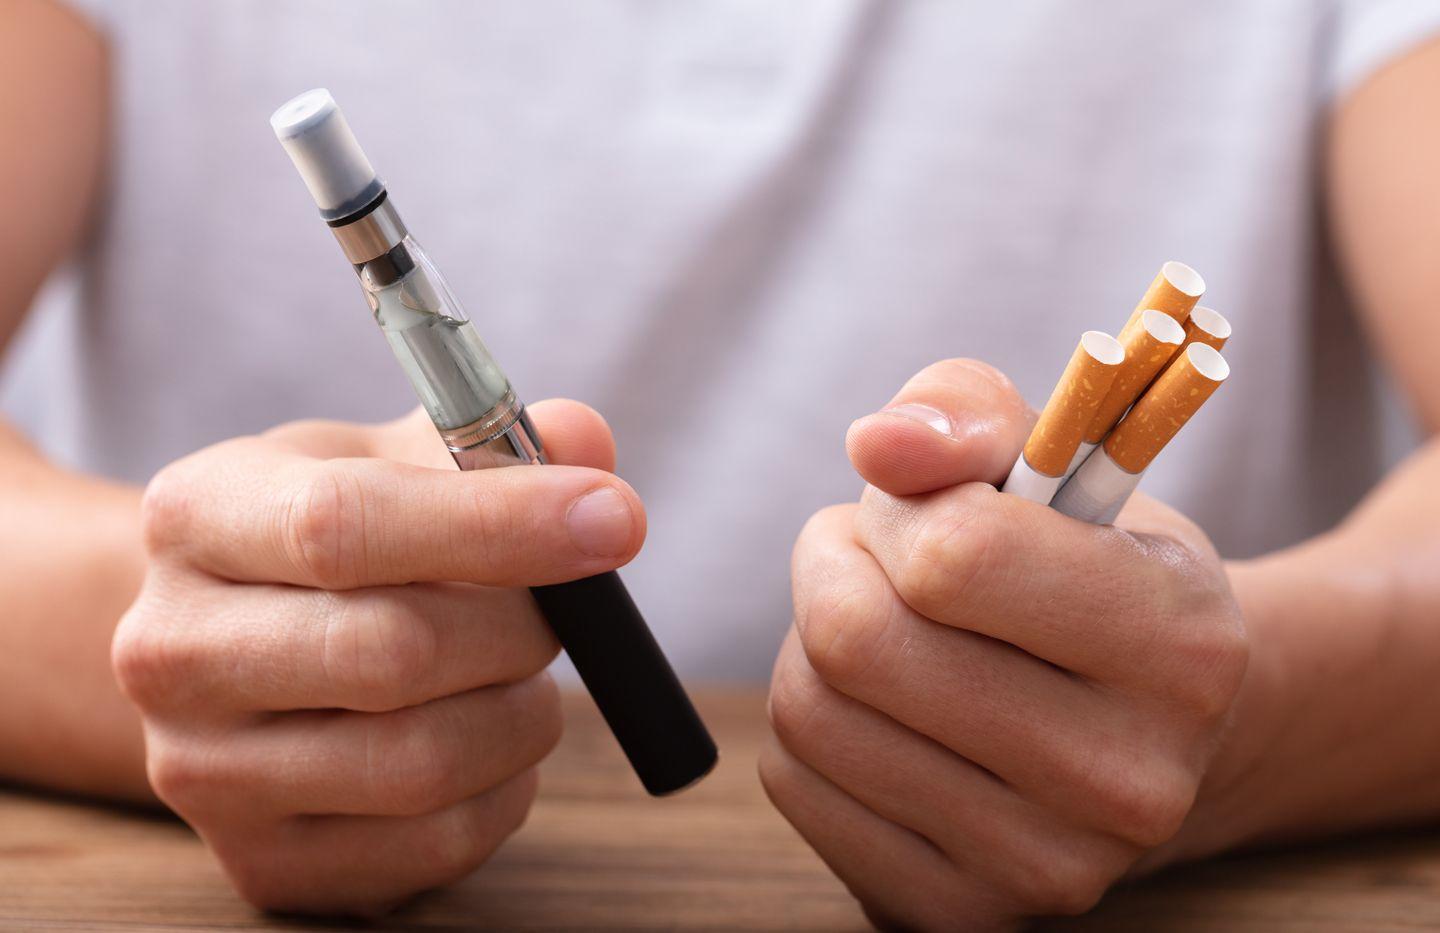 Tant els productes per a tabac escalfat com els cigarrets electrònics o vapejadors contenen aerosols amb nicotina o sense i són potencialment menys perjudicials.